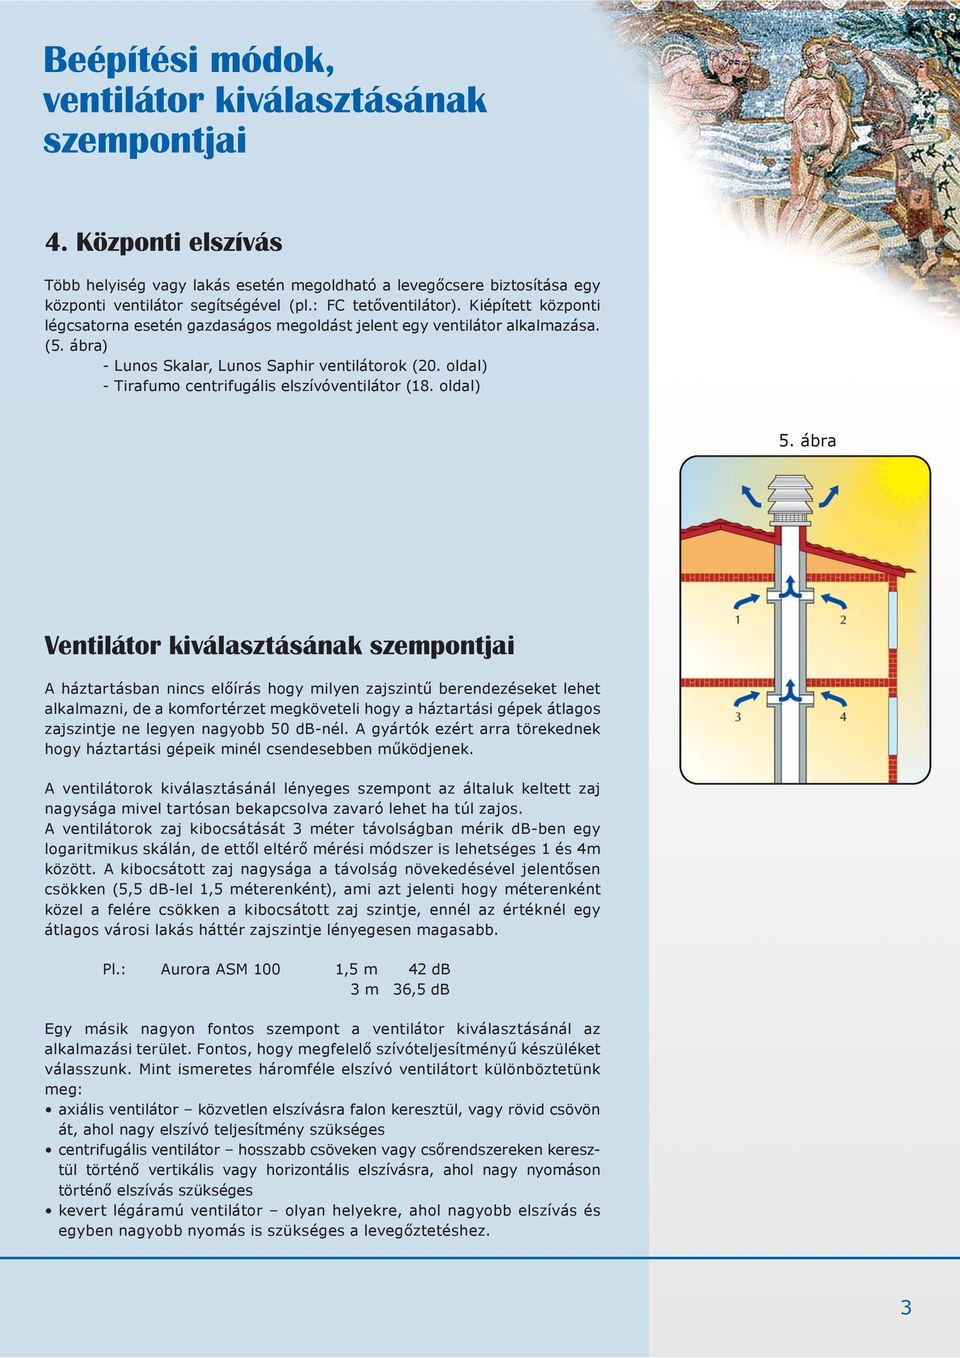 oldal) - Tirafumo centrifugális elszívóventilátor (18. oldal) 5.